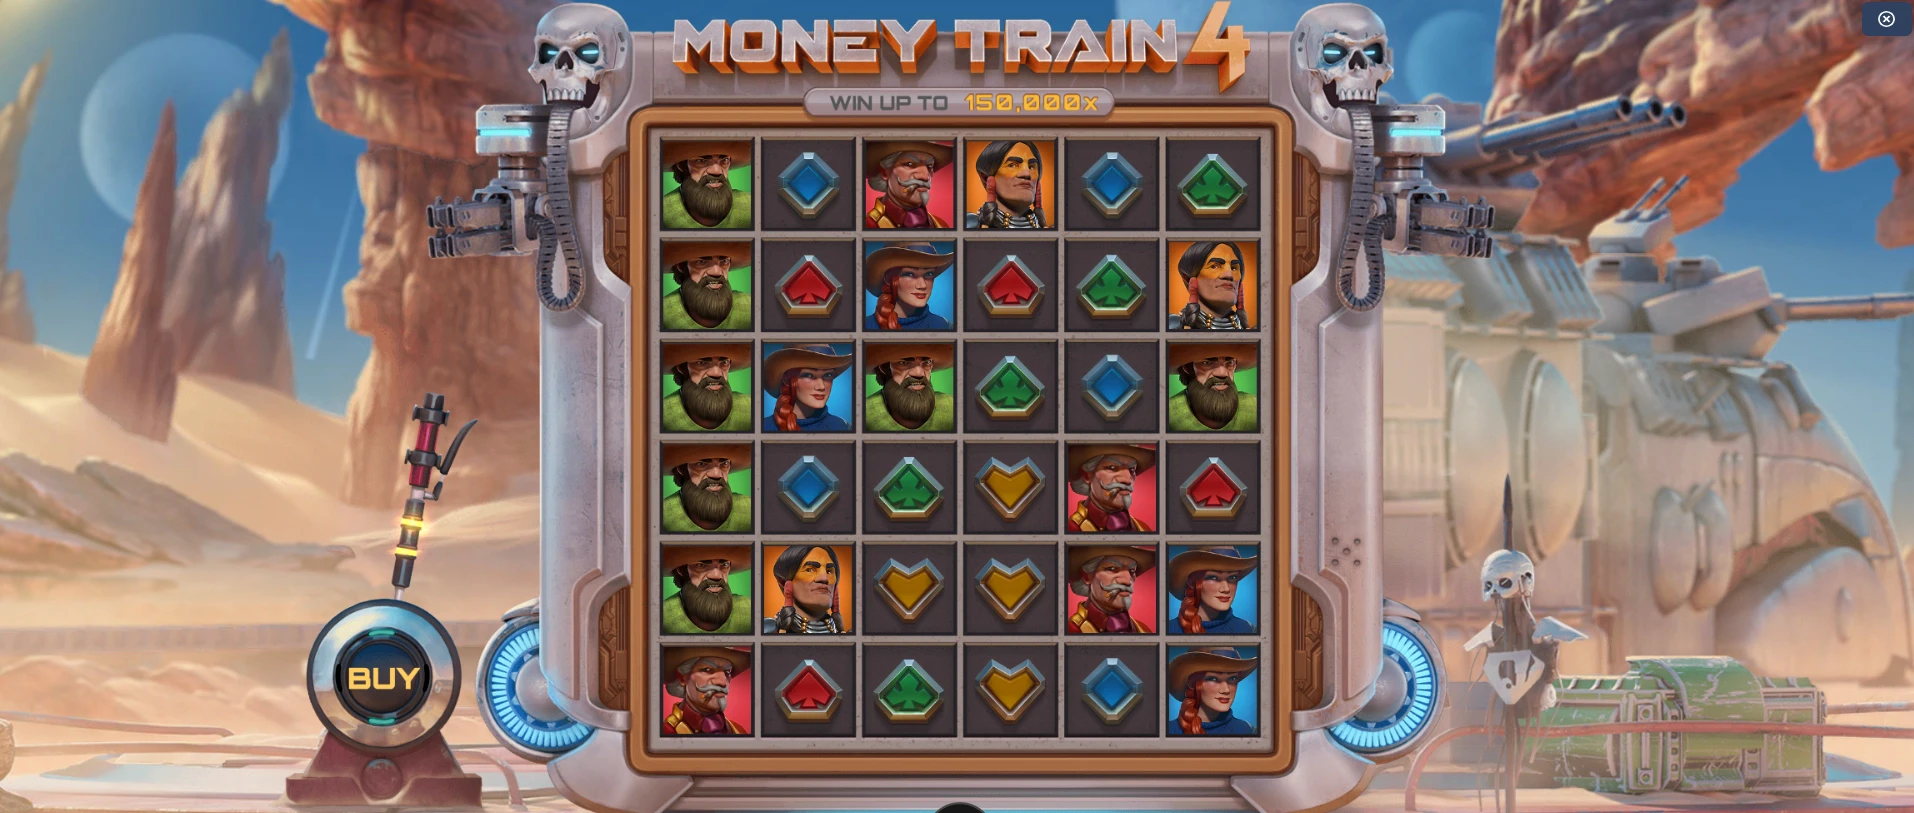 La grille de départ de Money Train 4 est composée de 6 colonnes avec 6 symboles à l’intérieur